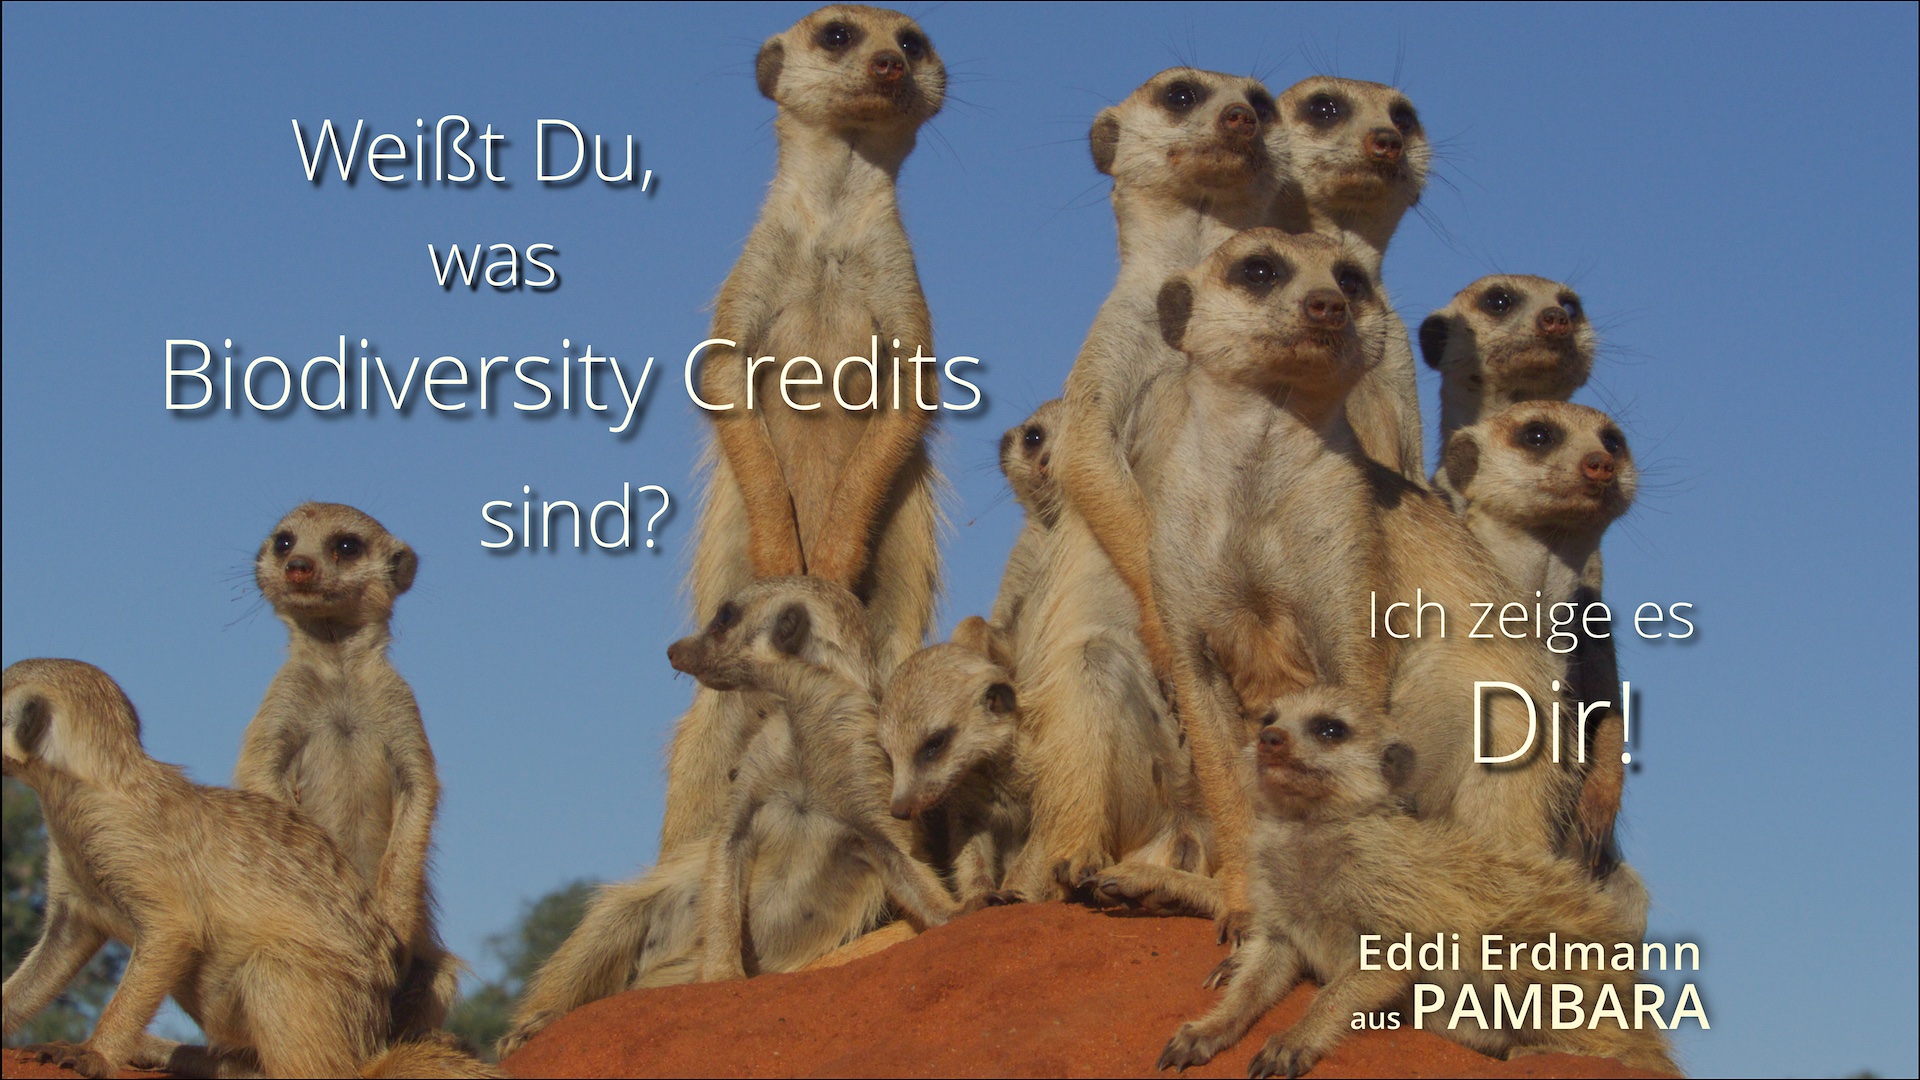 Biodiversity Credits mit Eddi Erdmann